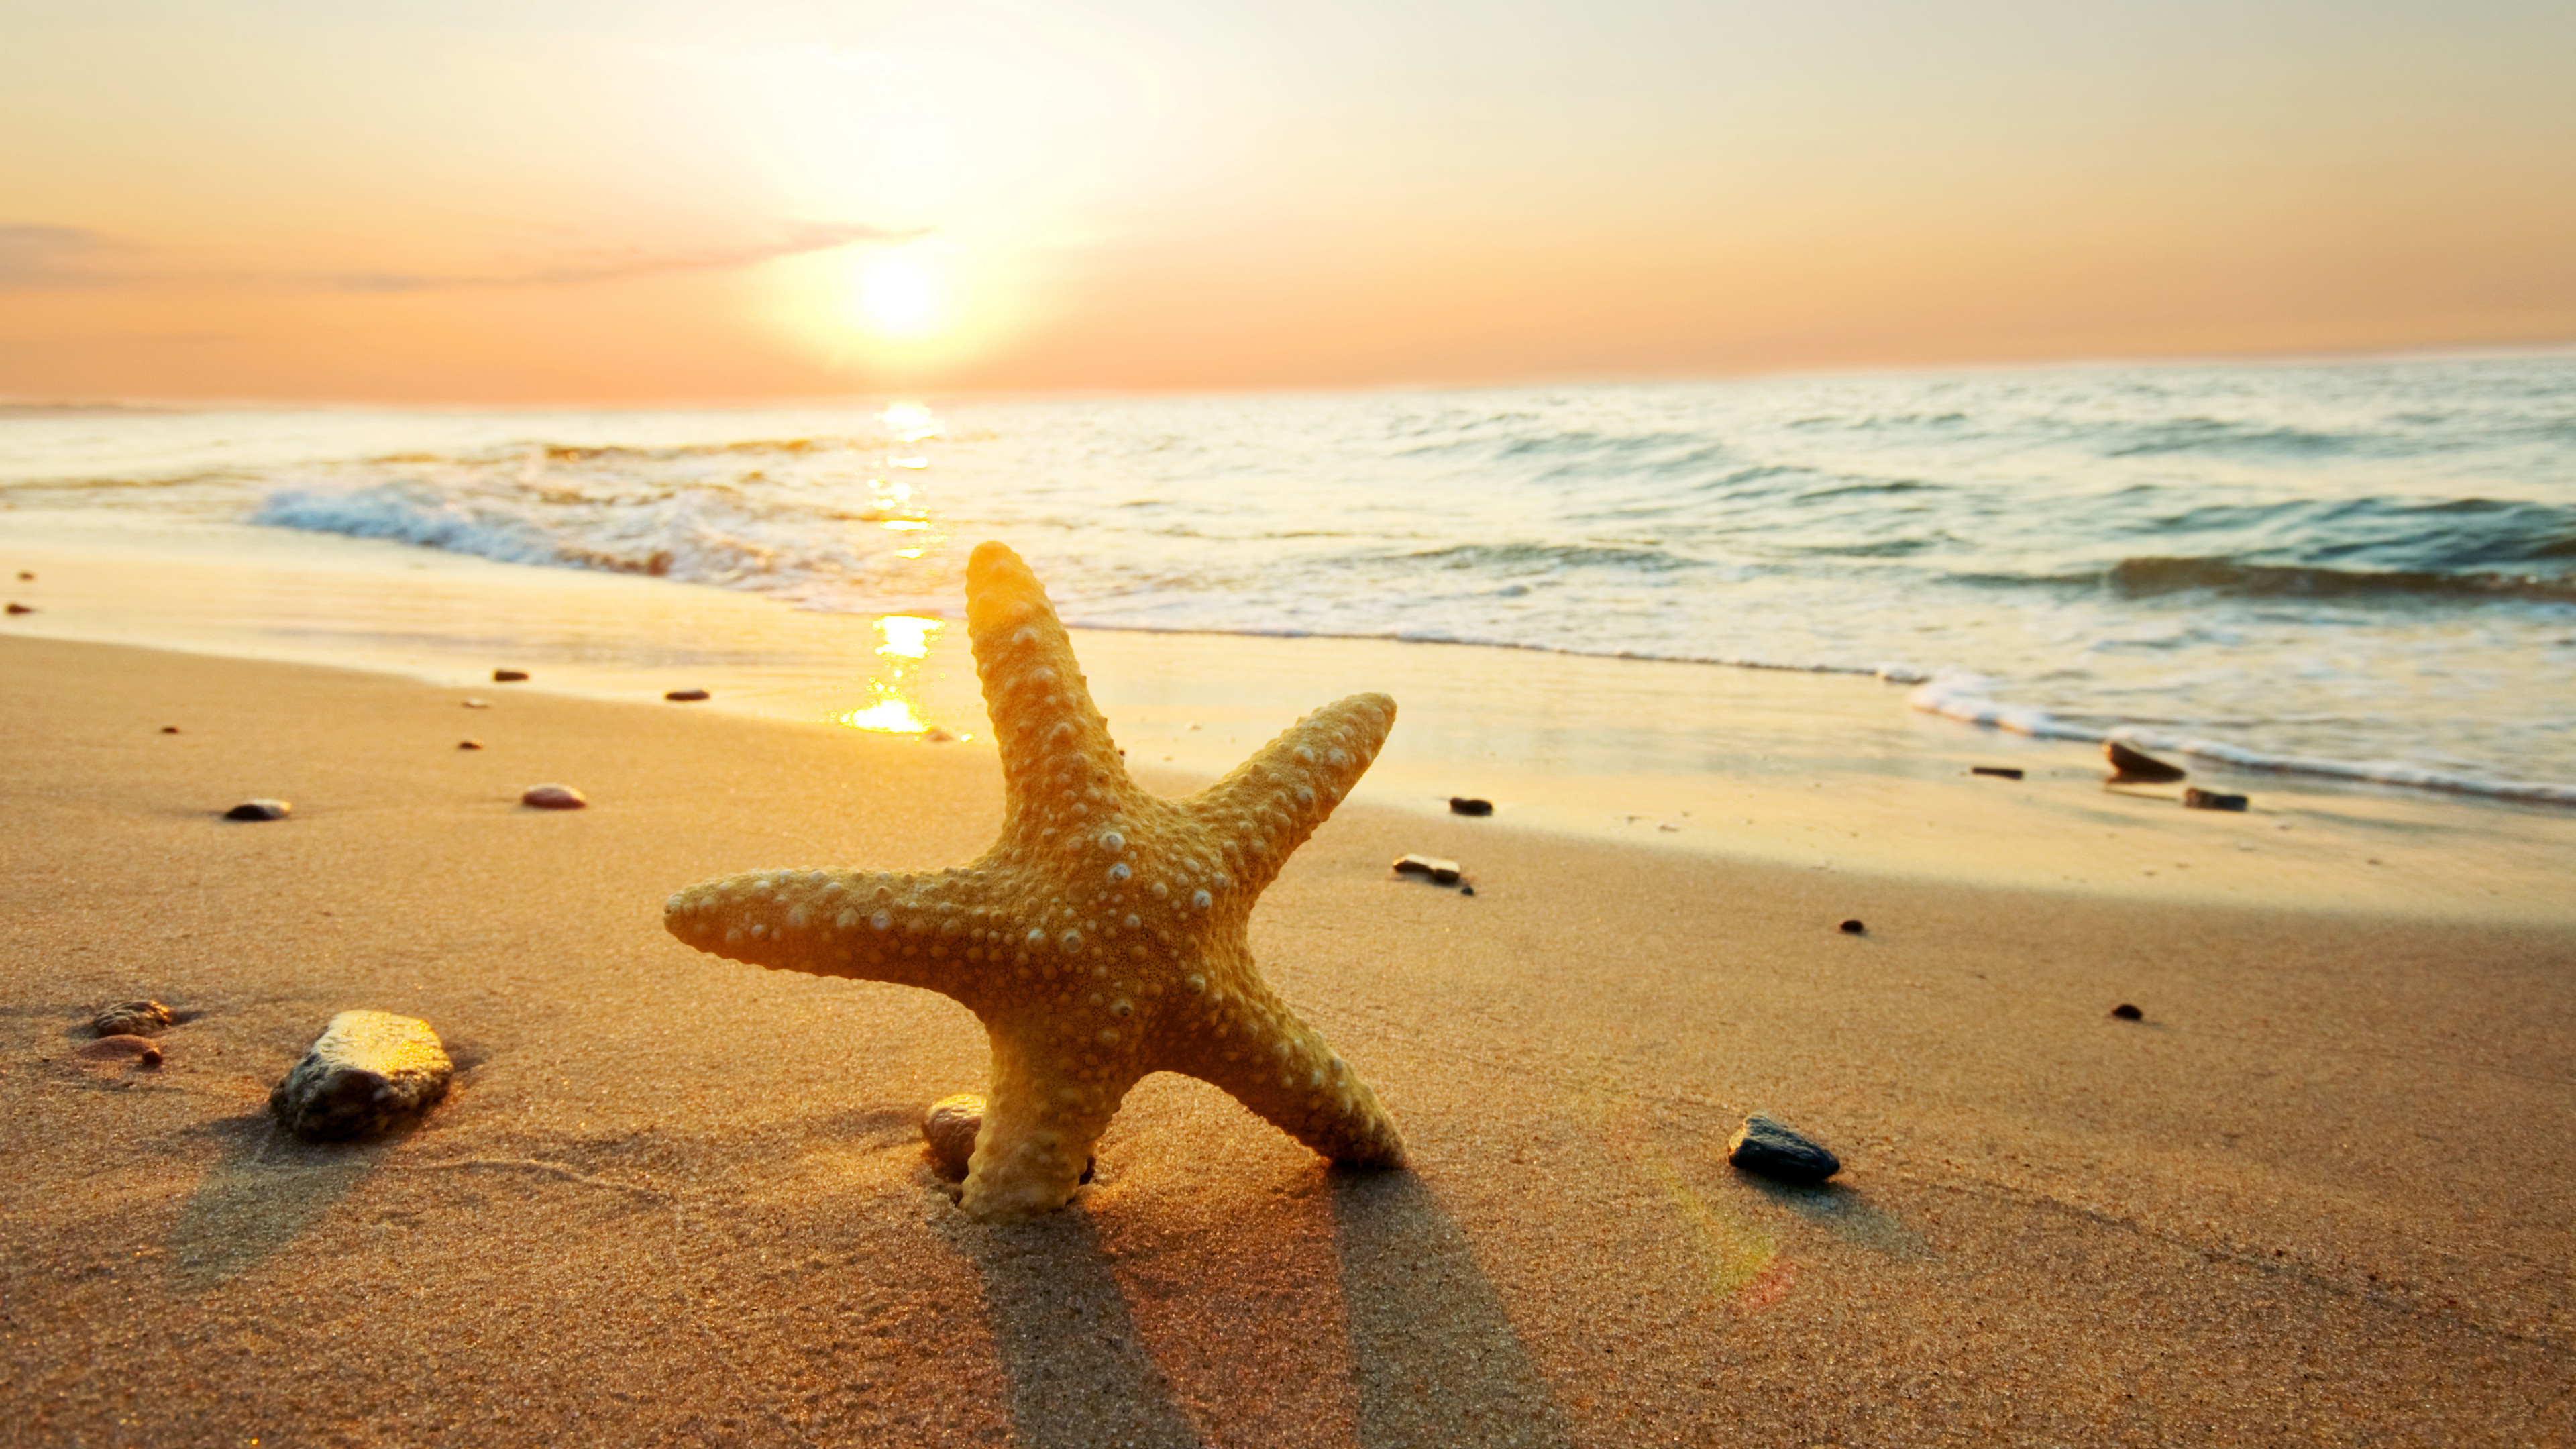 Sea Star: Beach, Sunlight, Echinoderms belonging to the class Asteroidea. 3840x2160 4K Wallpaper.